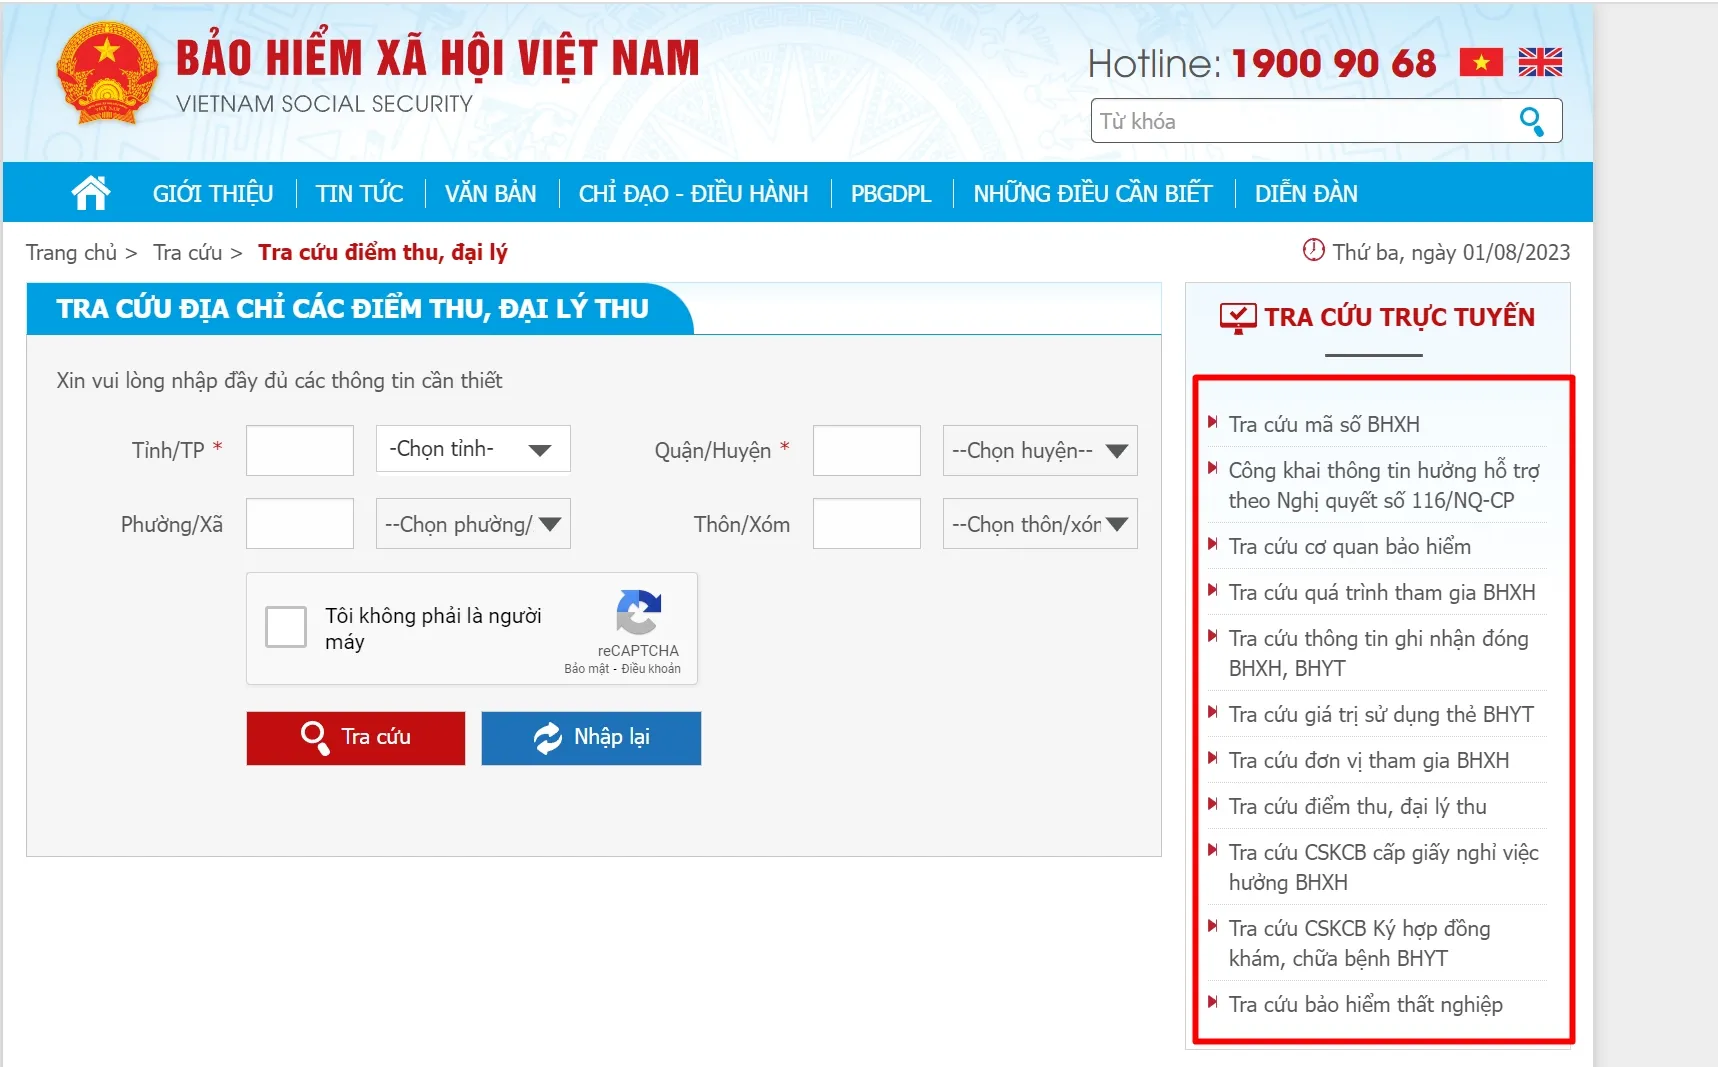 Tra cứu bảo hiểm xã hội qua web của BHXH Việt Nam 2